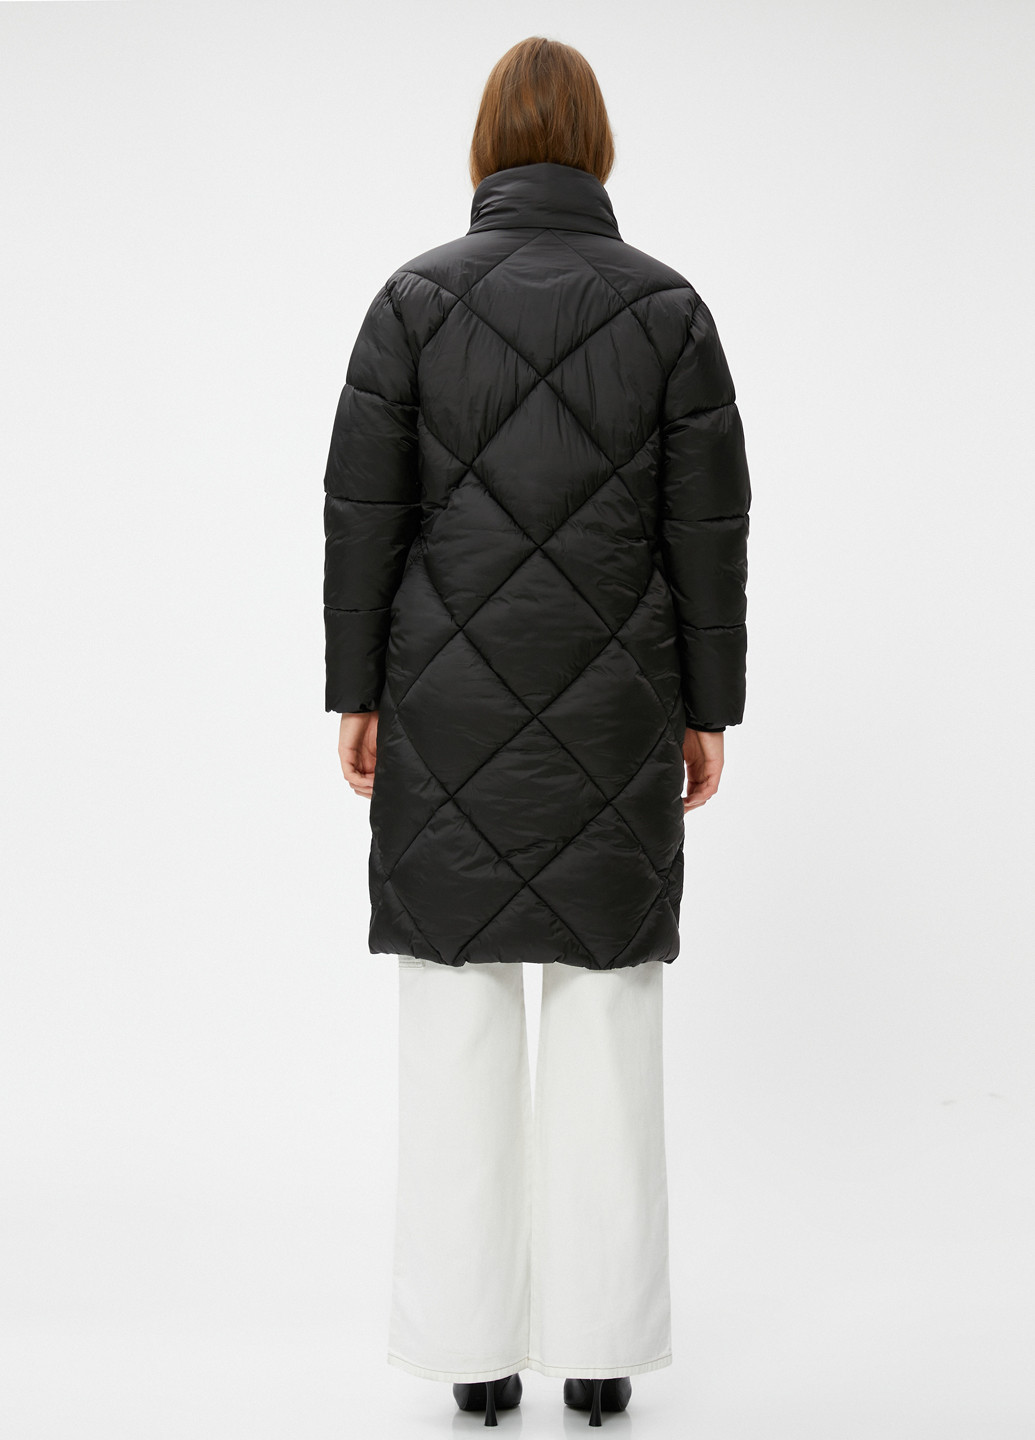 Черная демисезонная куртка куртка-пальто KOTON